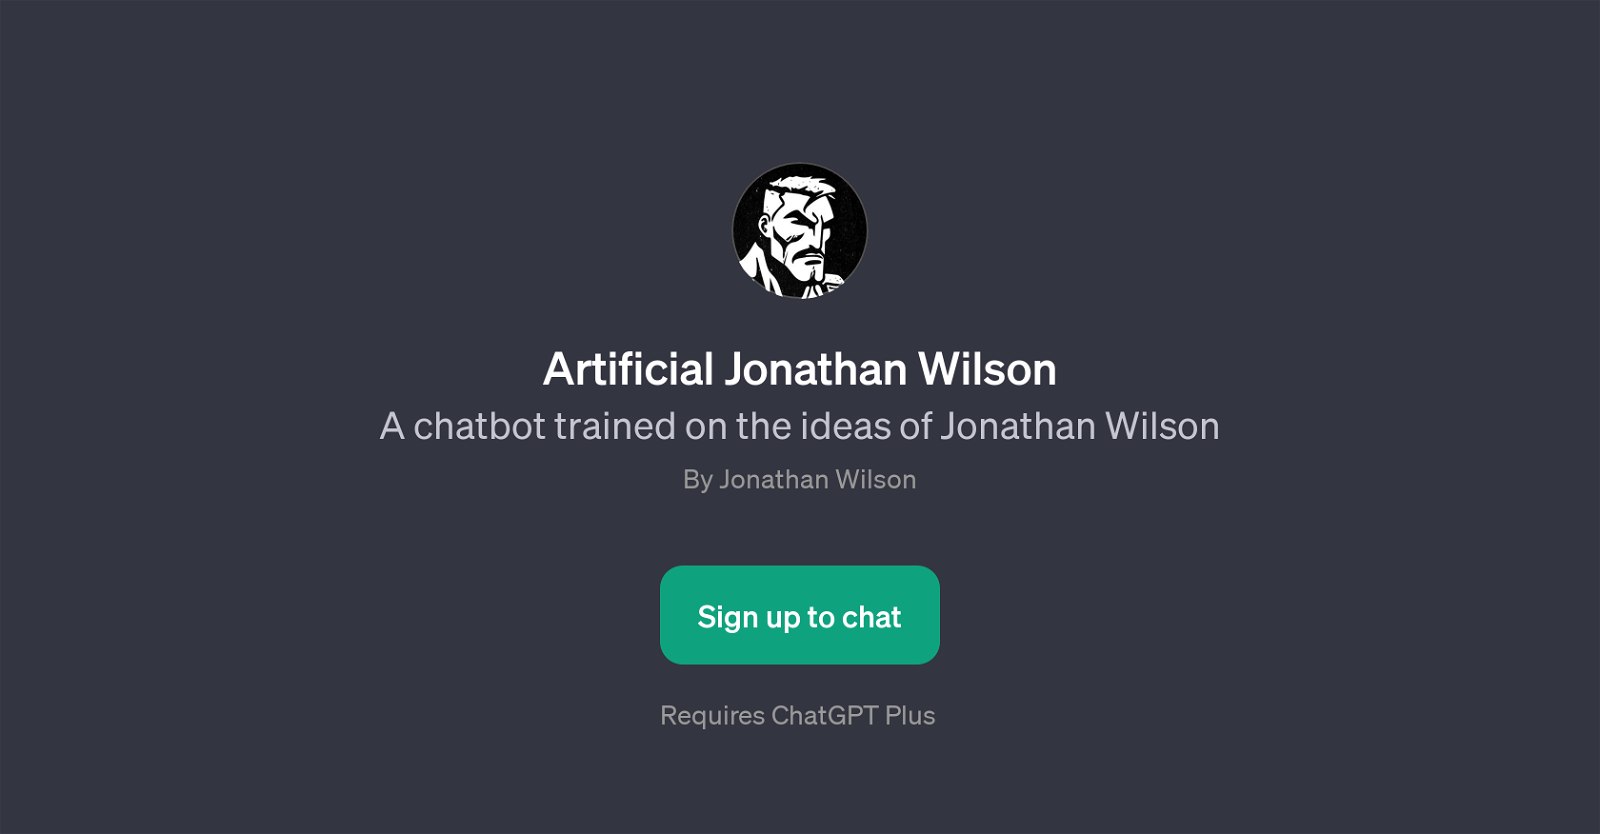 Artificial Jonathan Wilson website